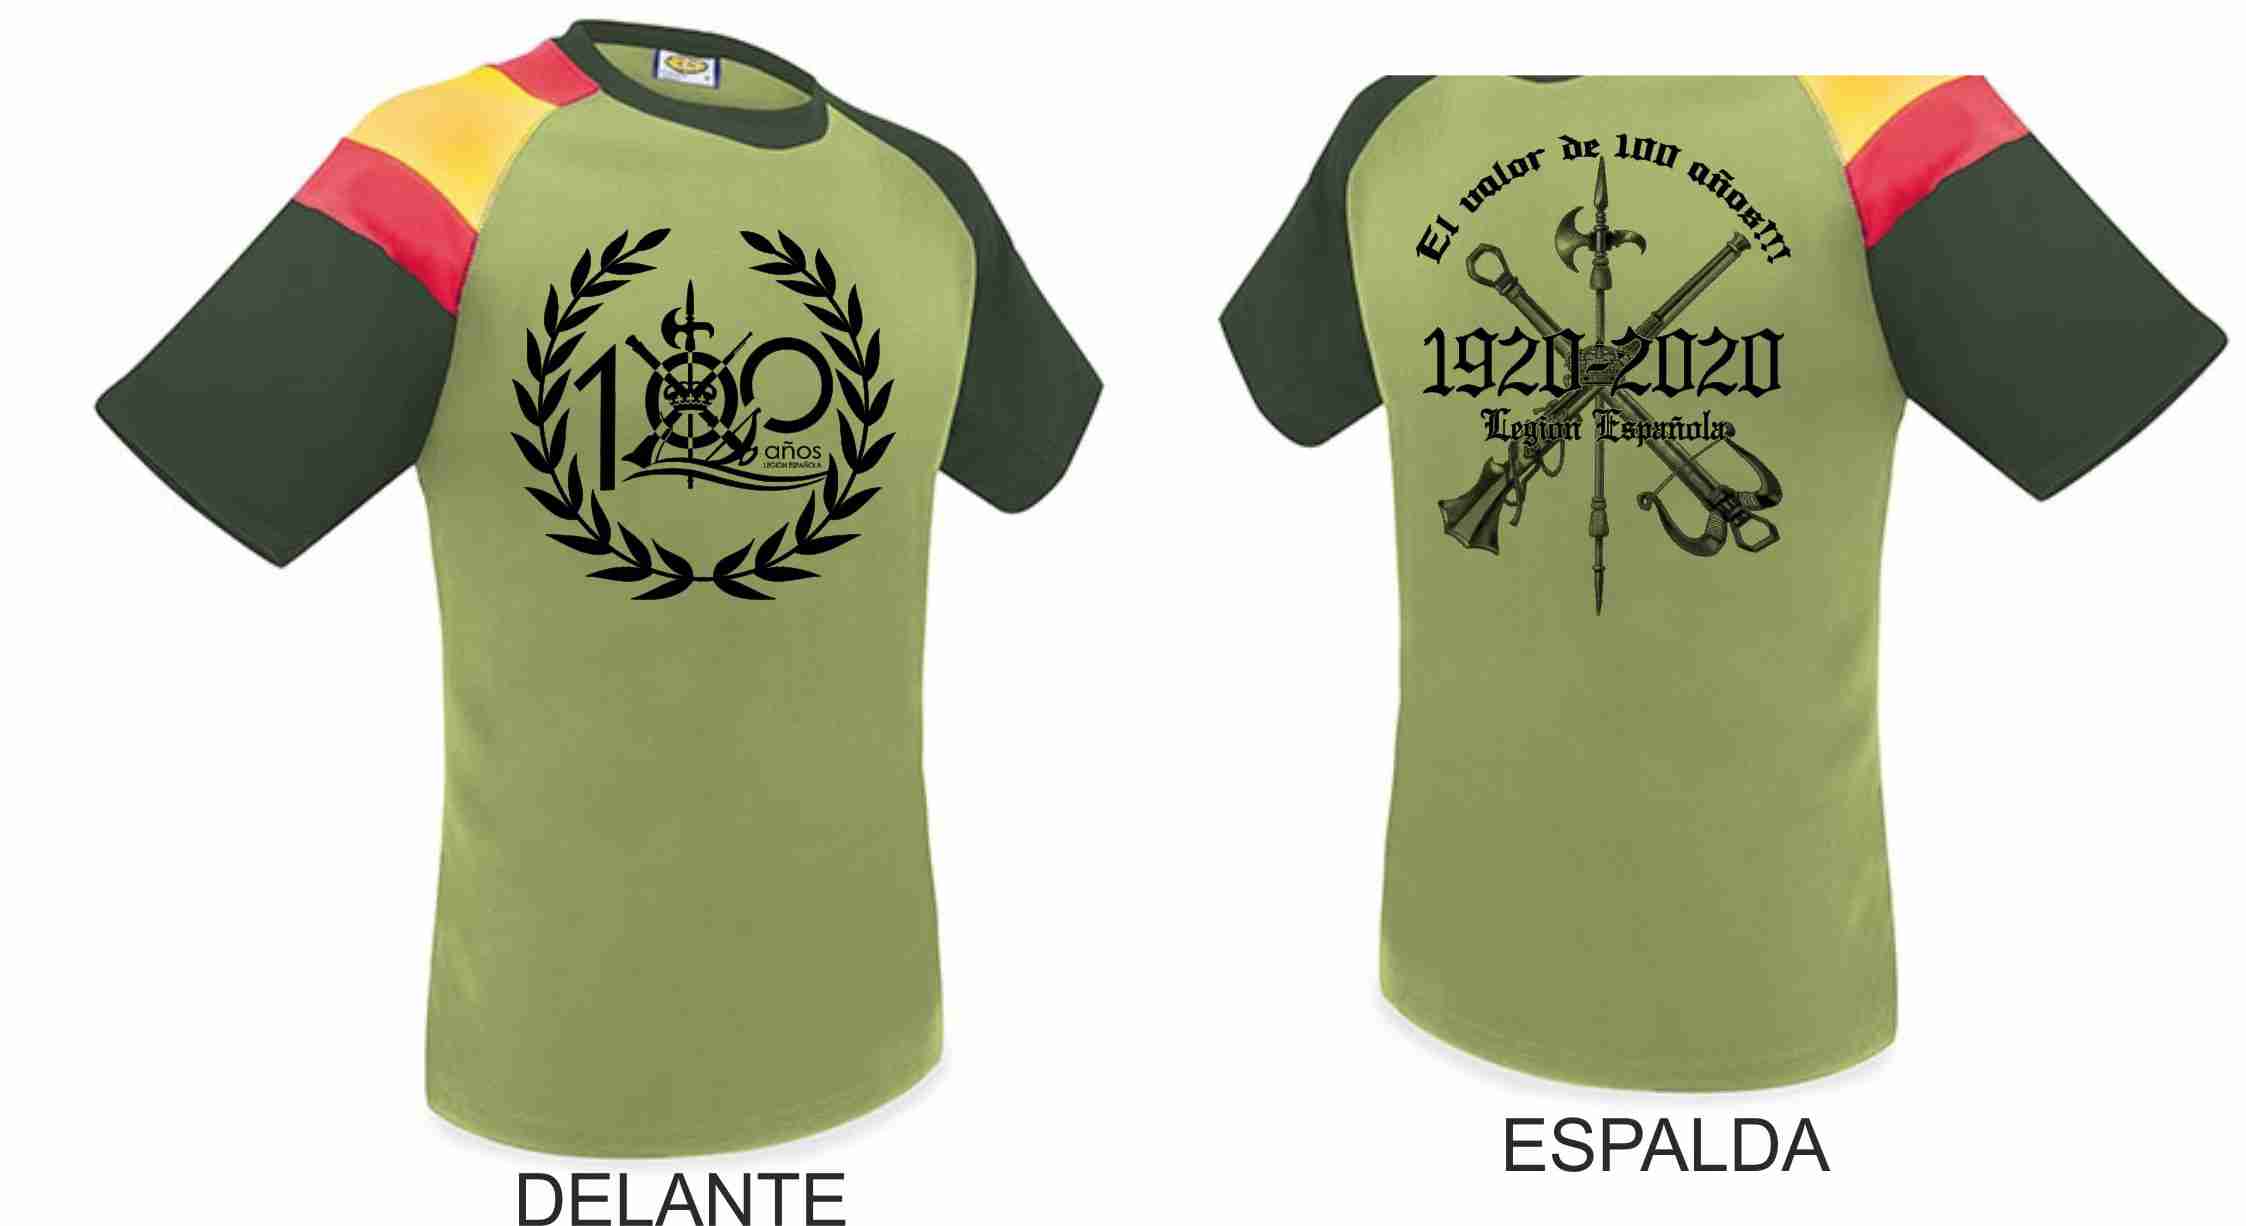 Camiseta Legión Española 100 años. \"El valor de 100 años\" Polies